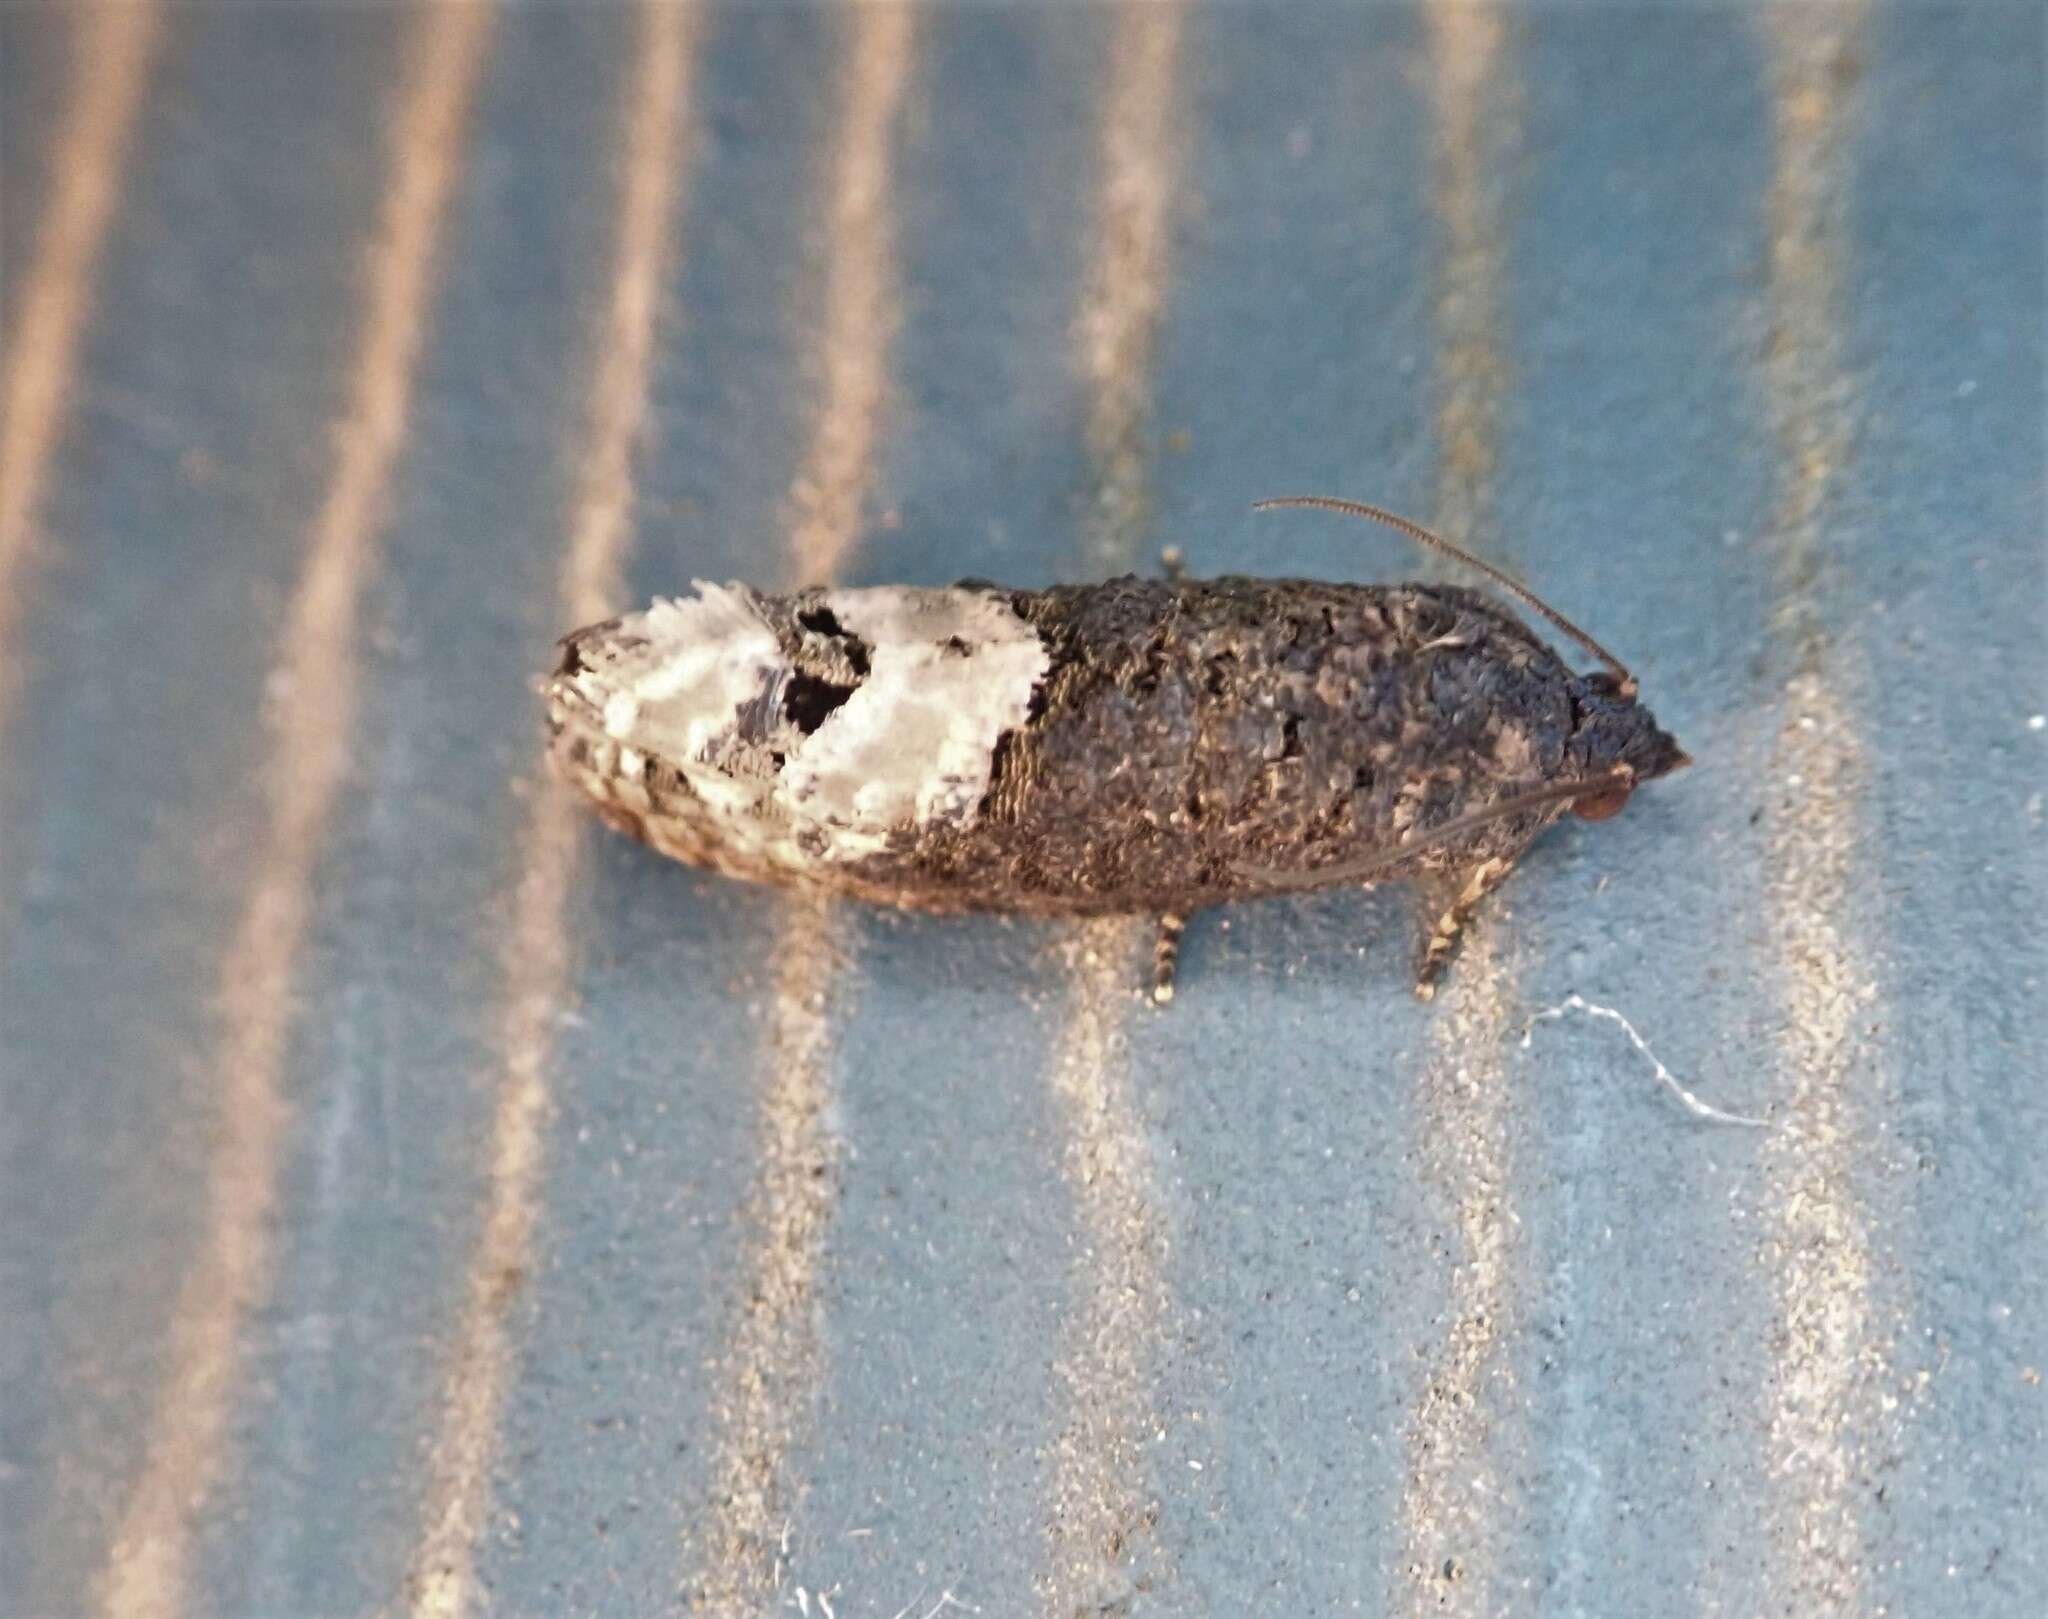 Image of Locust Twig Borer Moth